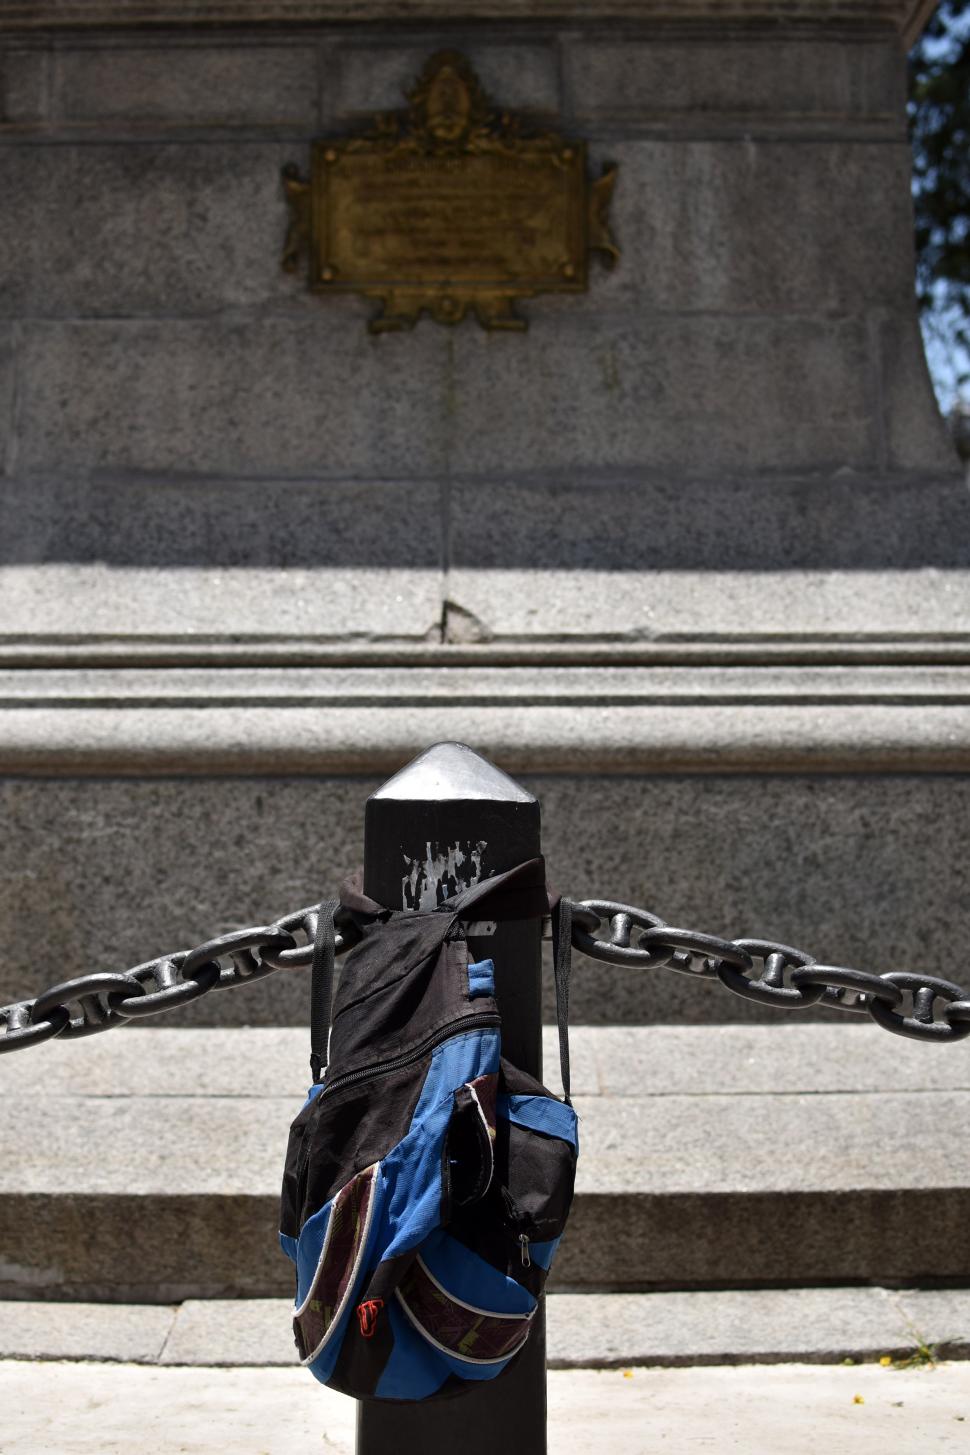 PERCHERO. En un poste del perímetro de la Estatua de la Libertad cuelgan una mochila y pegan calcos. 